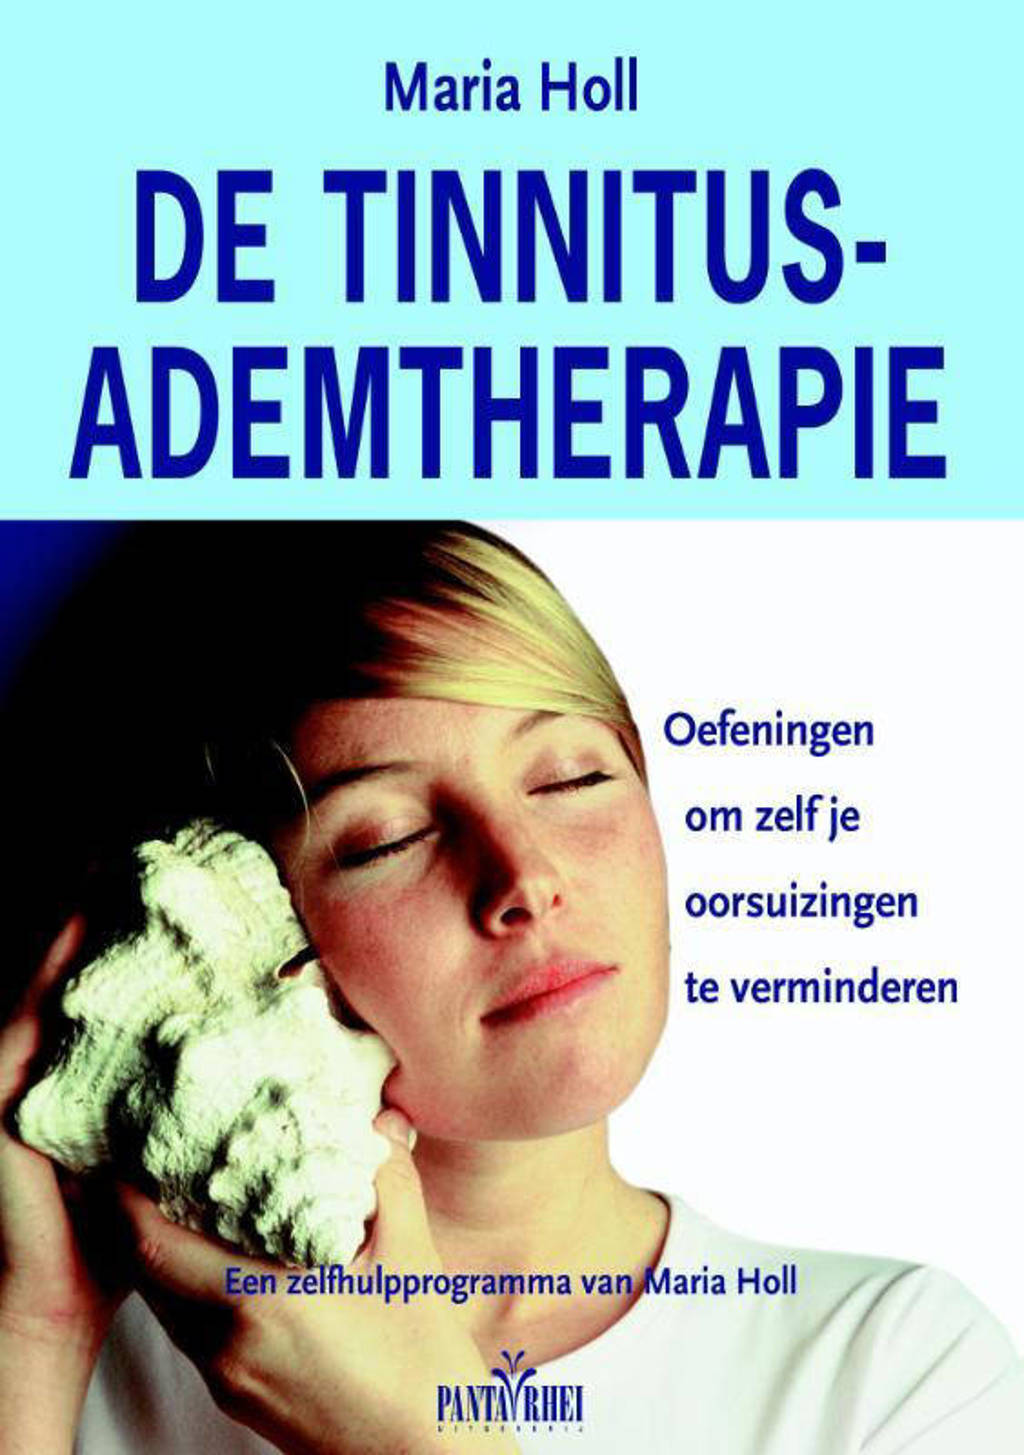 De Tinnitus-ademtherapie - Maria Holl